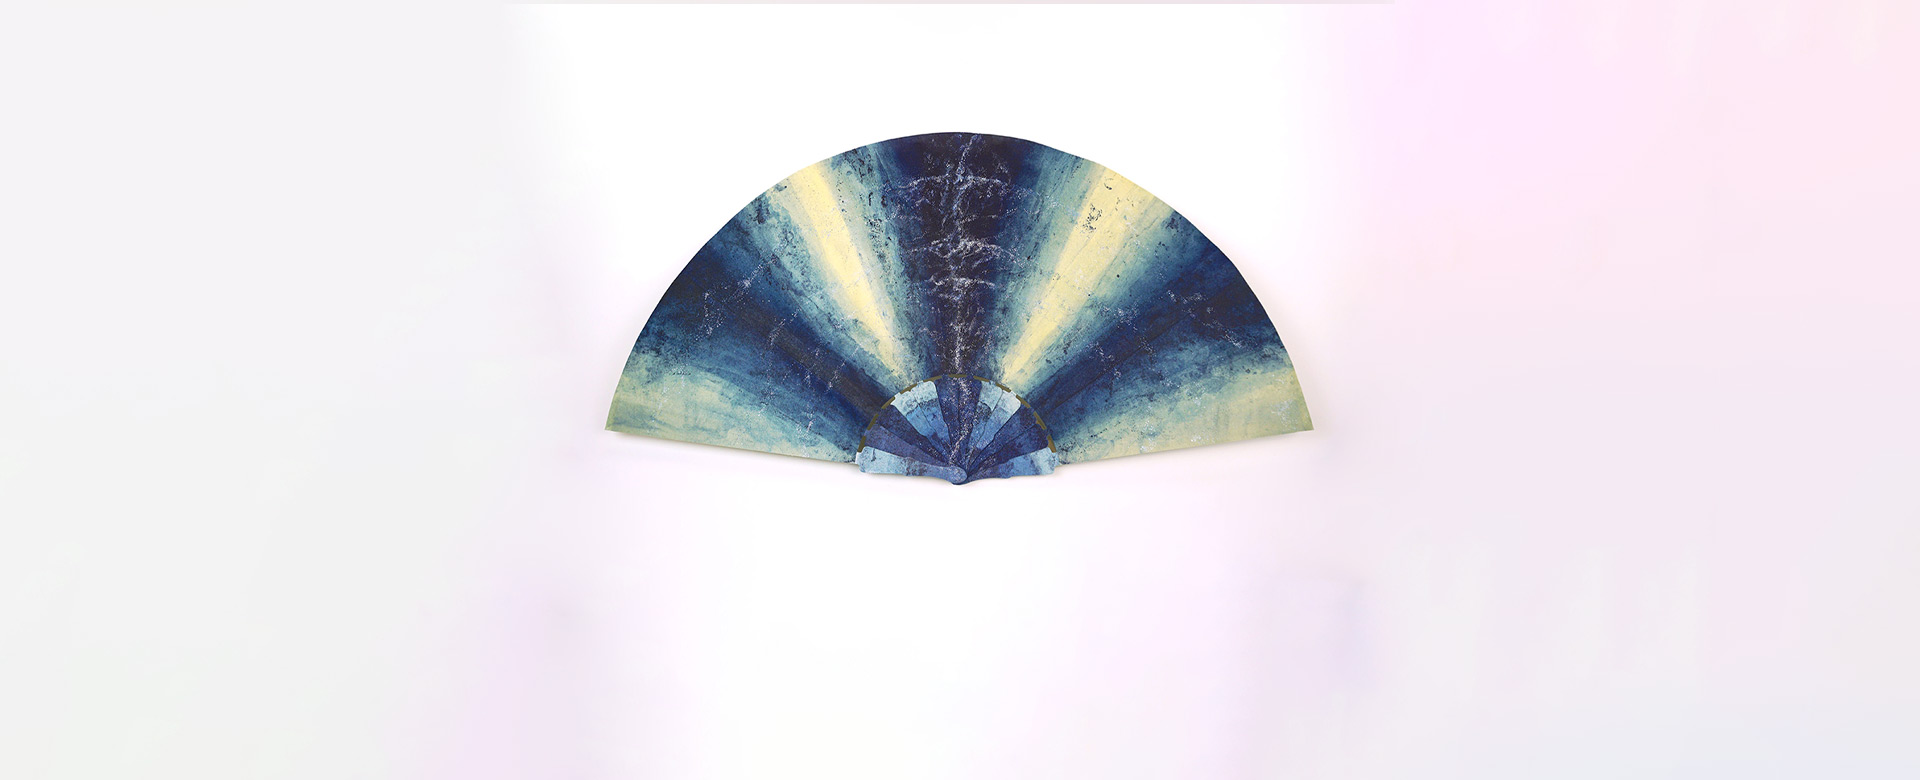 Il ventaglio In luce (2021) donato dall’artista Virginia Lorenzetti al presidente della Repubblica Sergio Mattarella